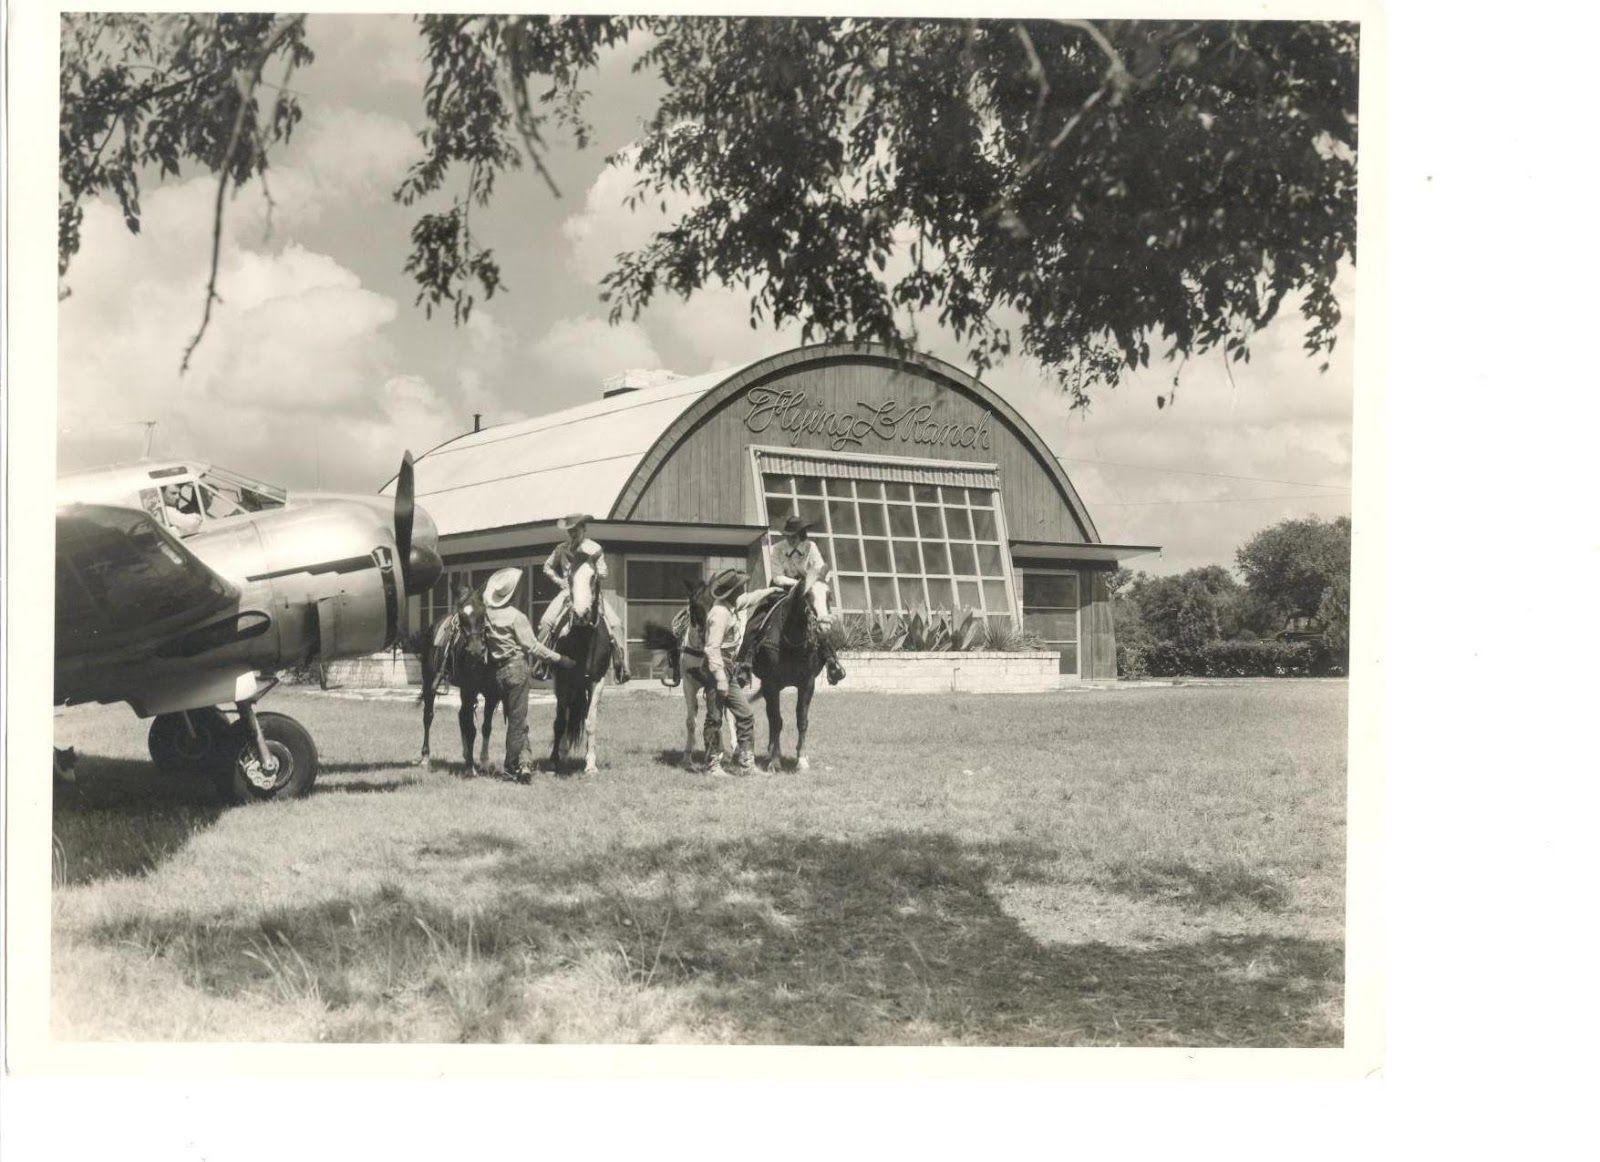 Flying L Horse Logo - Buck's Blog: Bringing Back 1947 At The Flying L